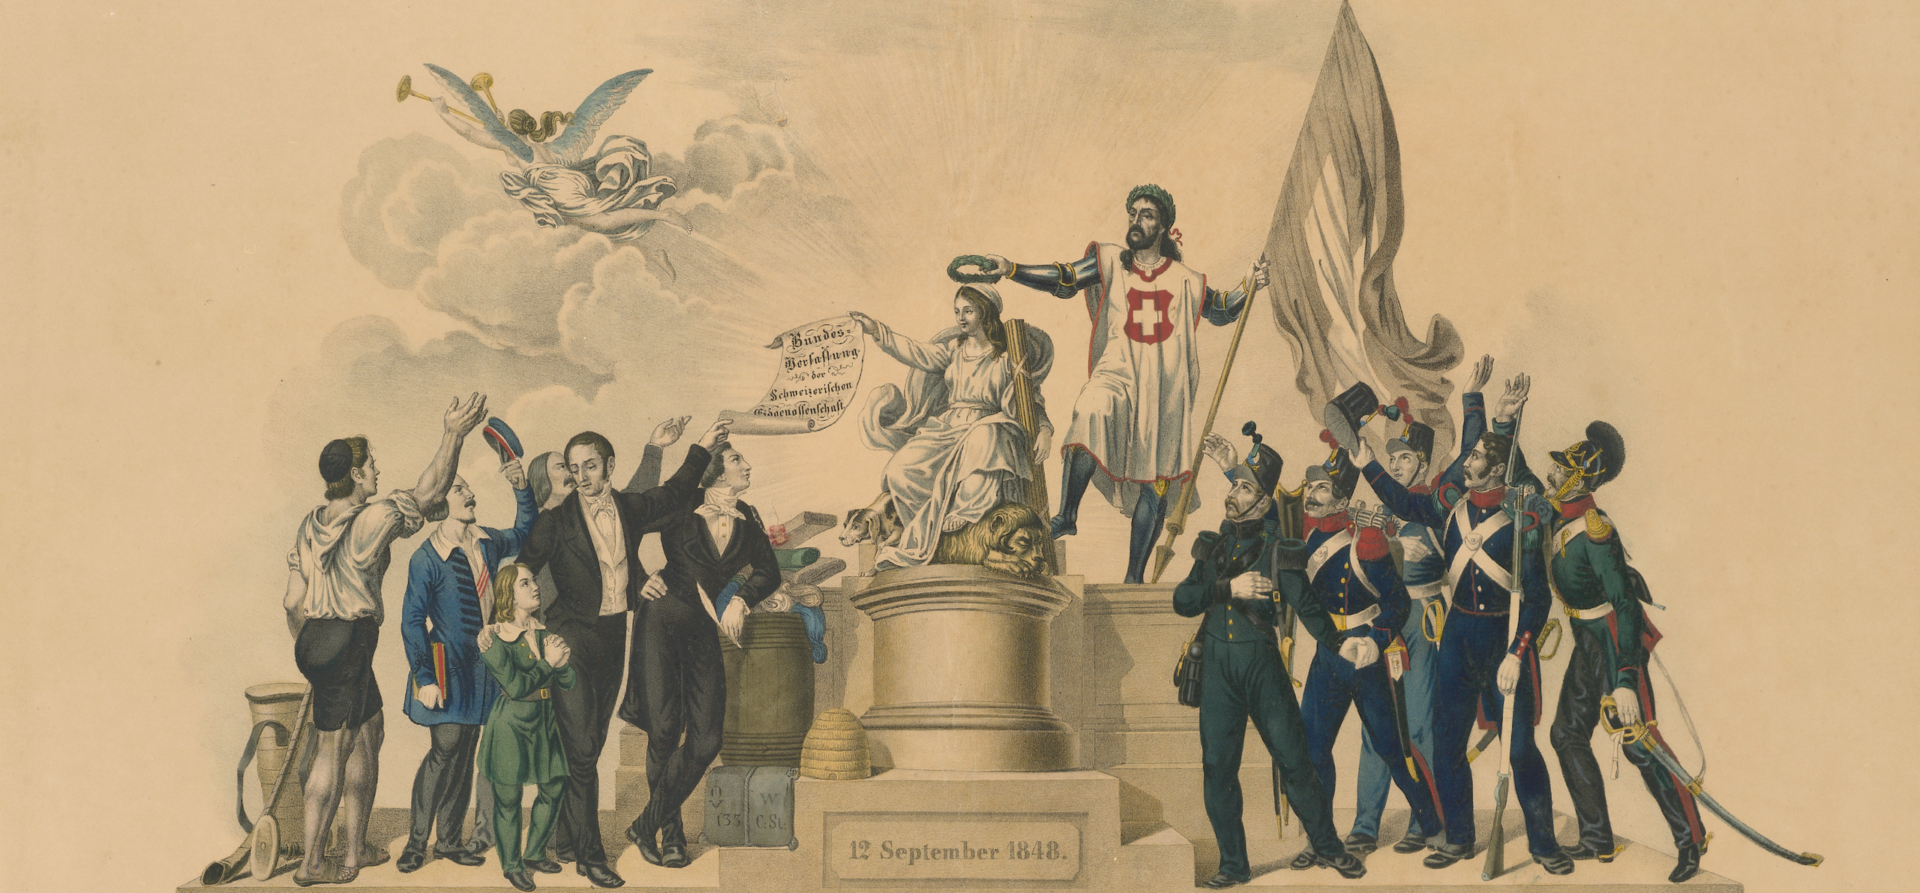 Bundesverfassung der Eidgenossenschaft vom 12. September 1848, mit allegorischer Figurengruppe. Ausschnitt